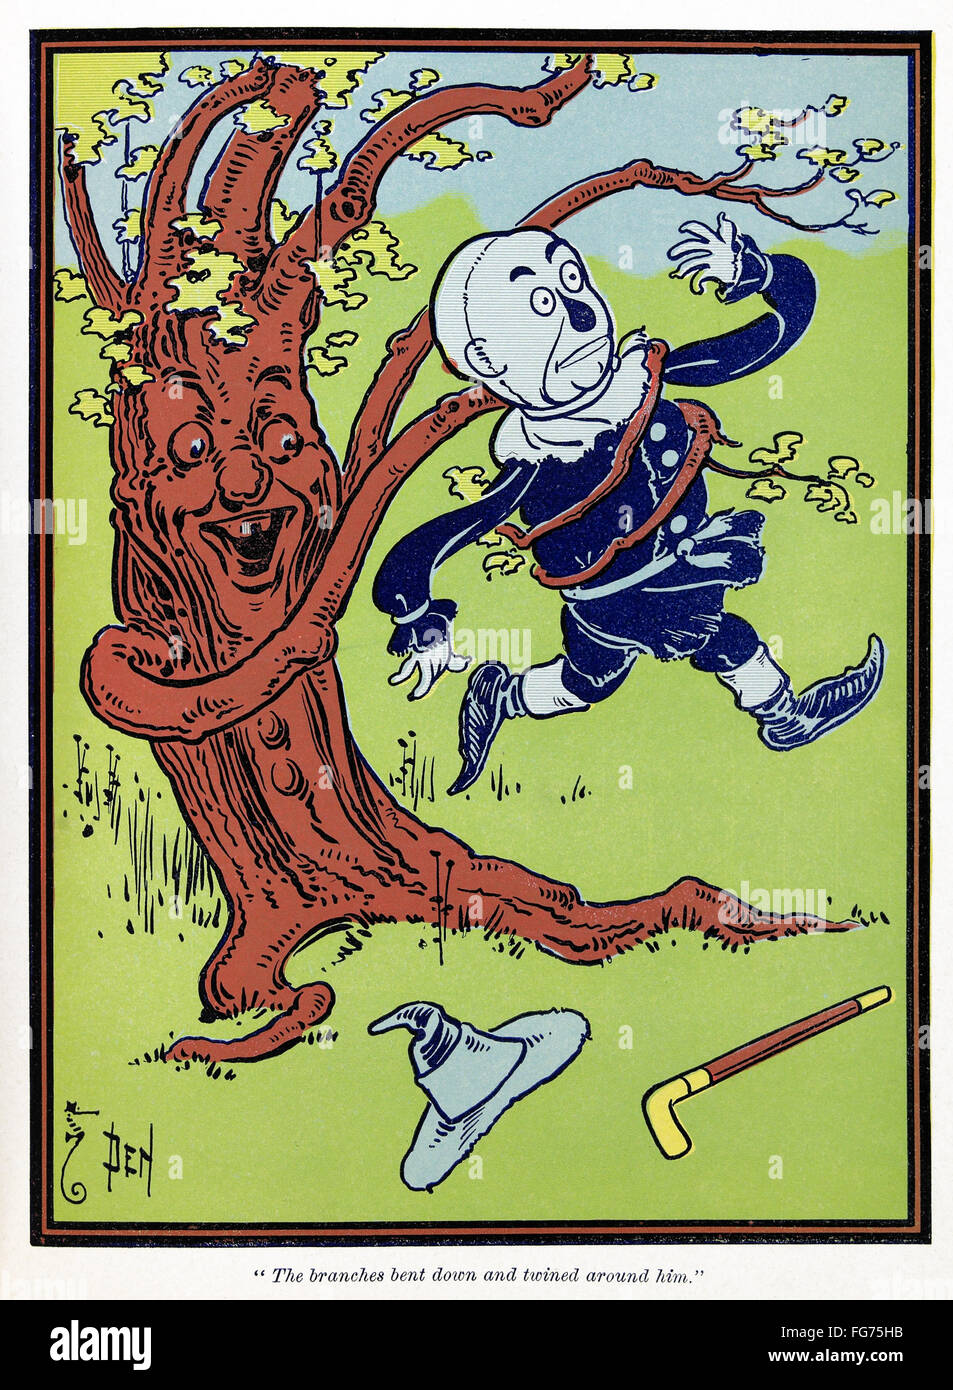 ZAUBERER VON OZ, 1900. /n'The Zweige bückte sich und schlang um ihn herum. " Illustration von w. Denslow für die erste Auflage von "The Wonderful Wizard of Oz" von L. Frank Baum, 1900. Stockfoto